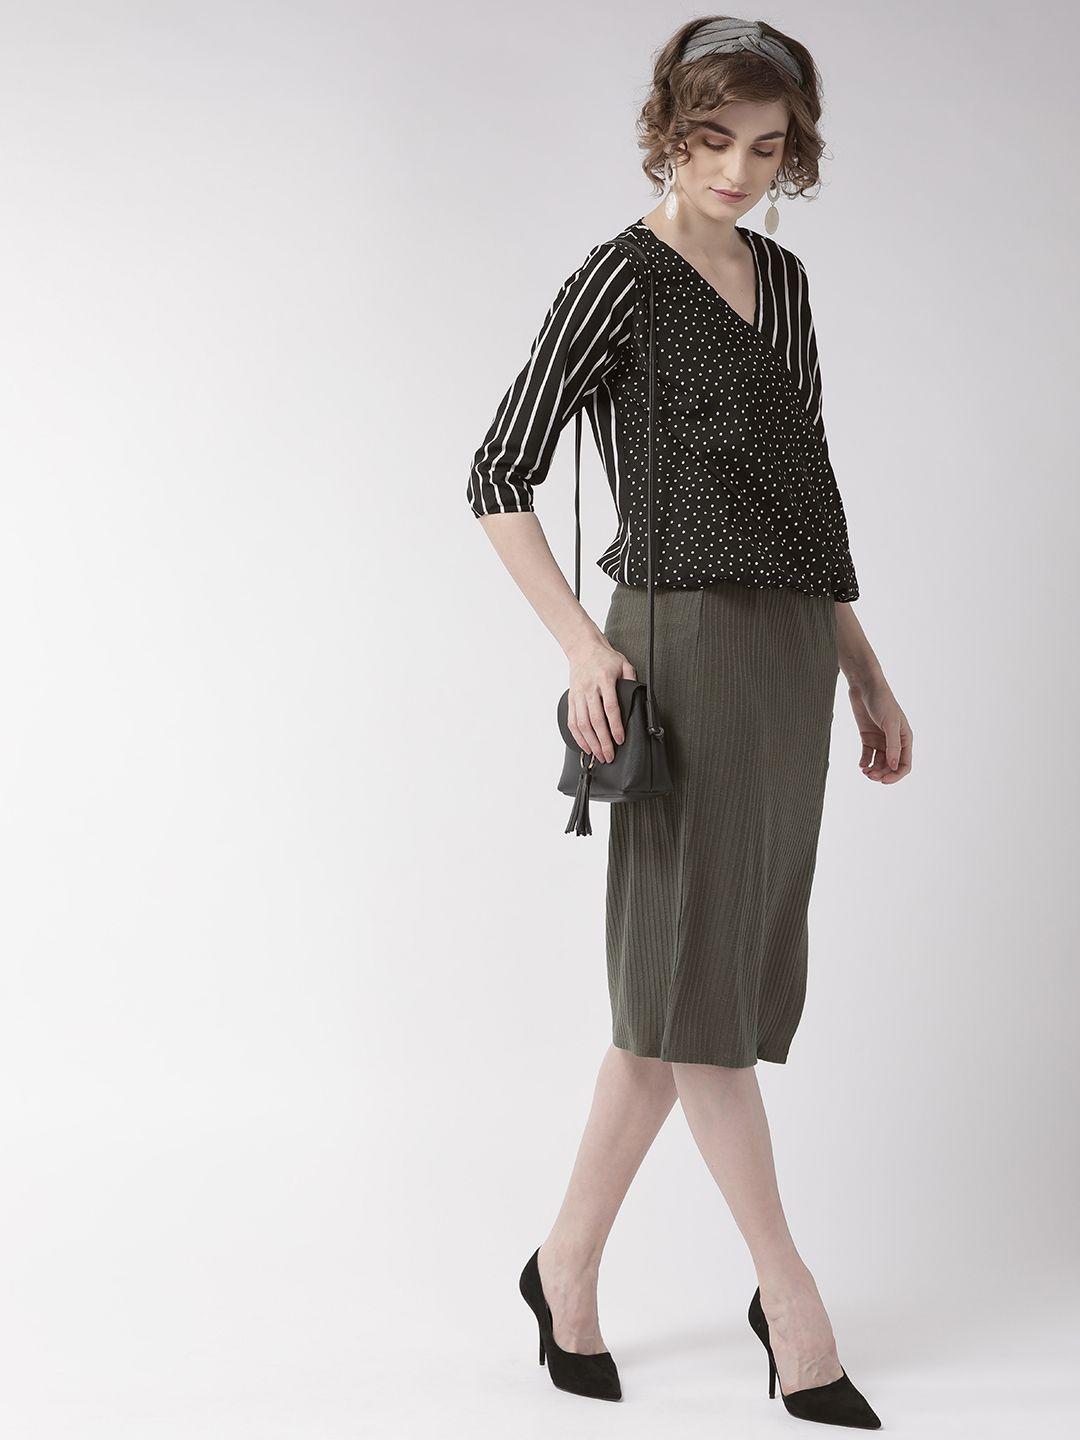 style-quotient-women-black-&-white-striped-blouson-top